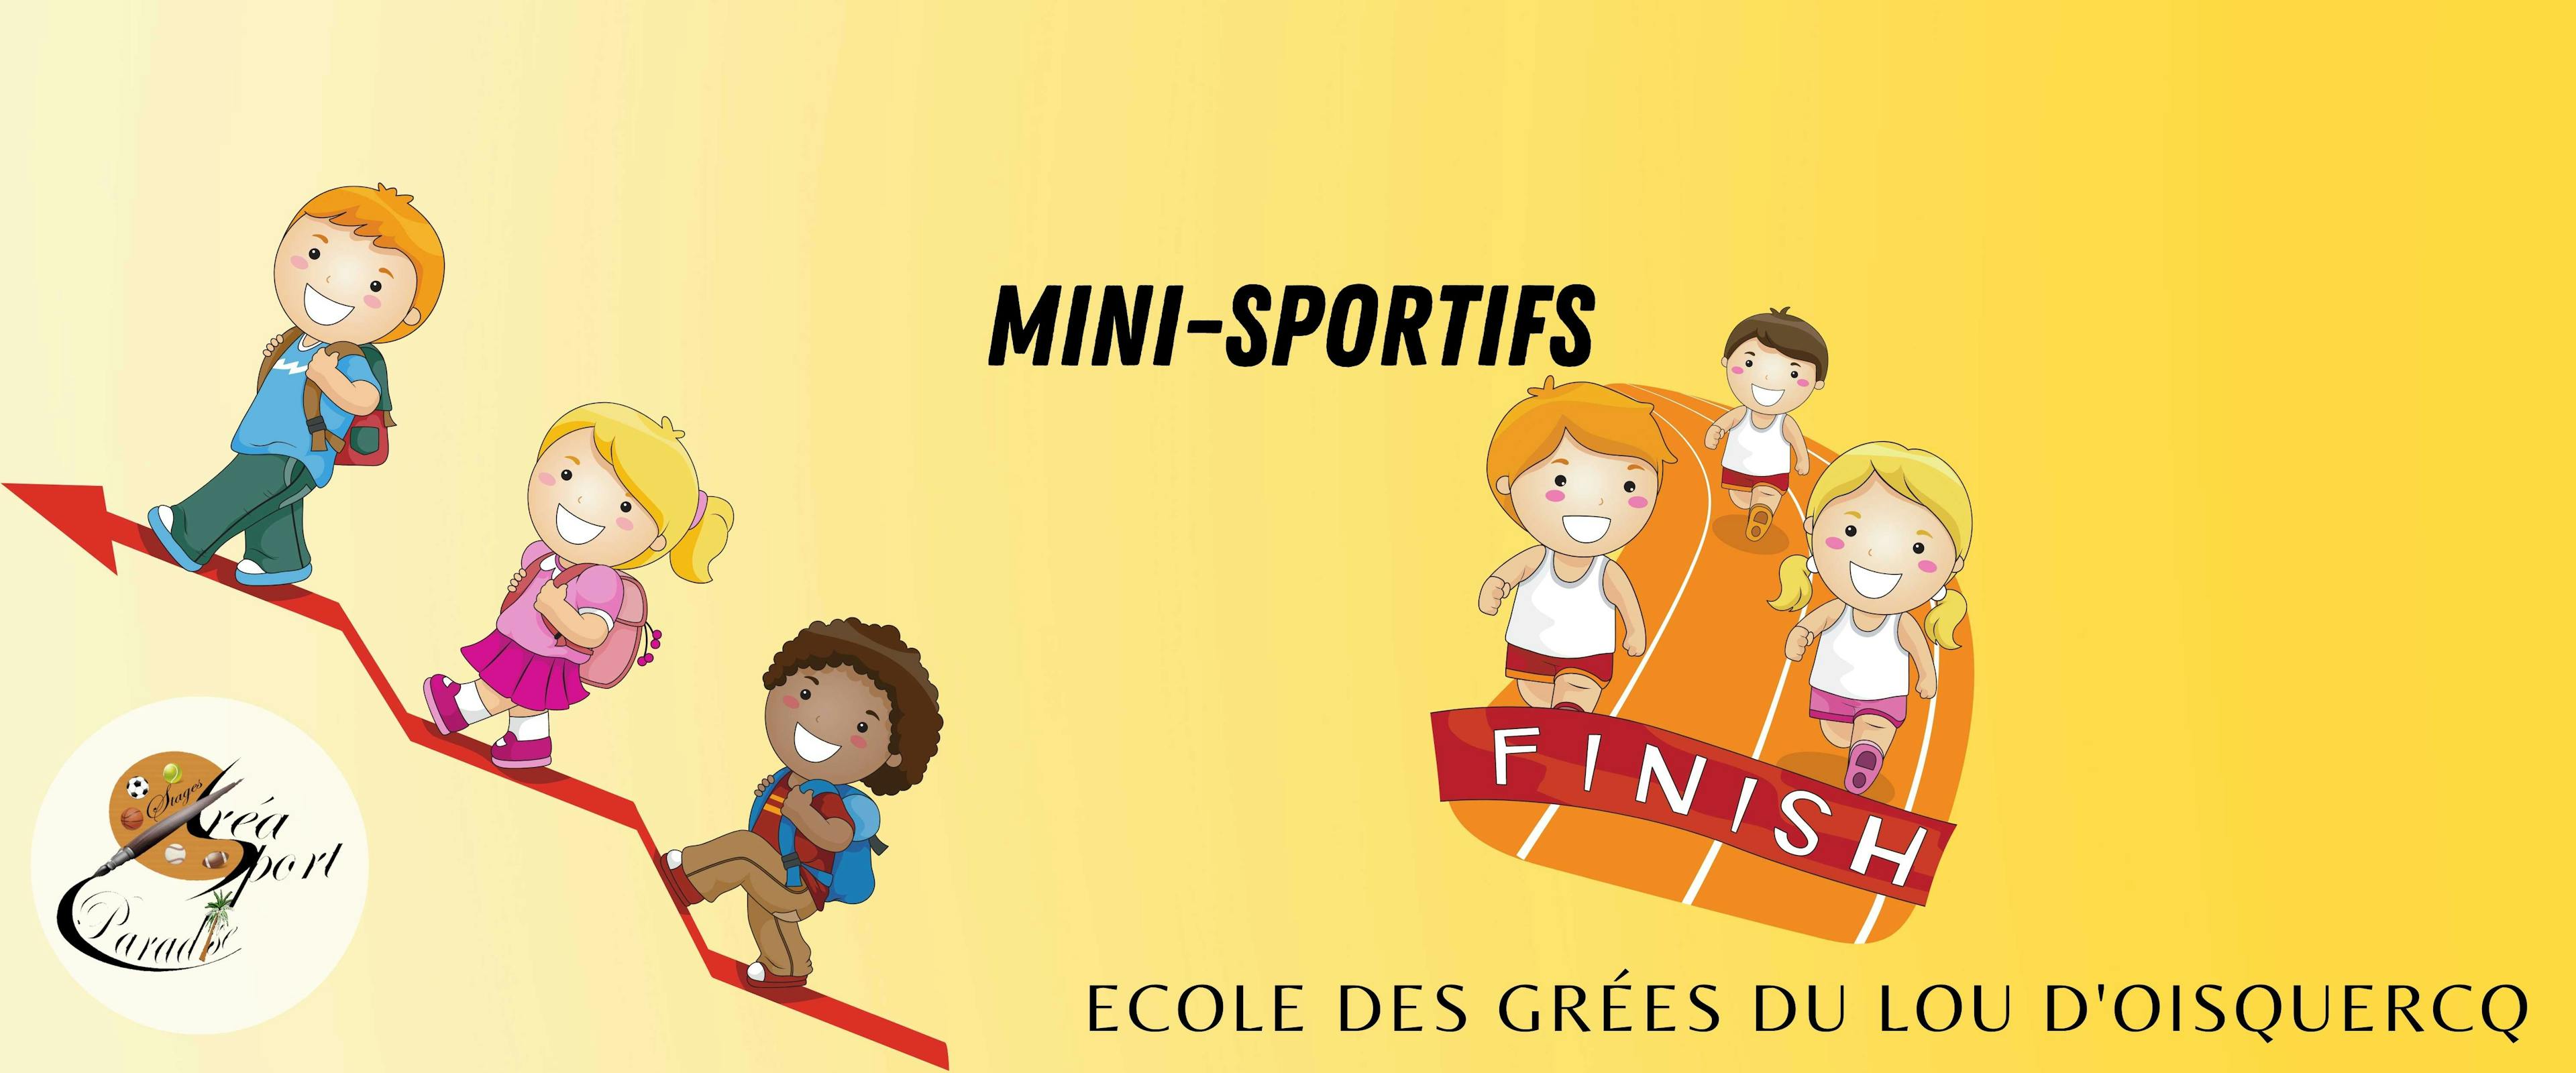 Parascolaires Ecole de Oisquercq - 16h20 LUNDI - Mini Sportifs